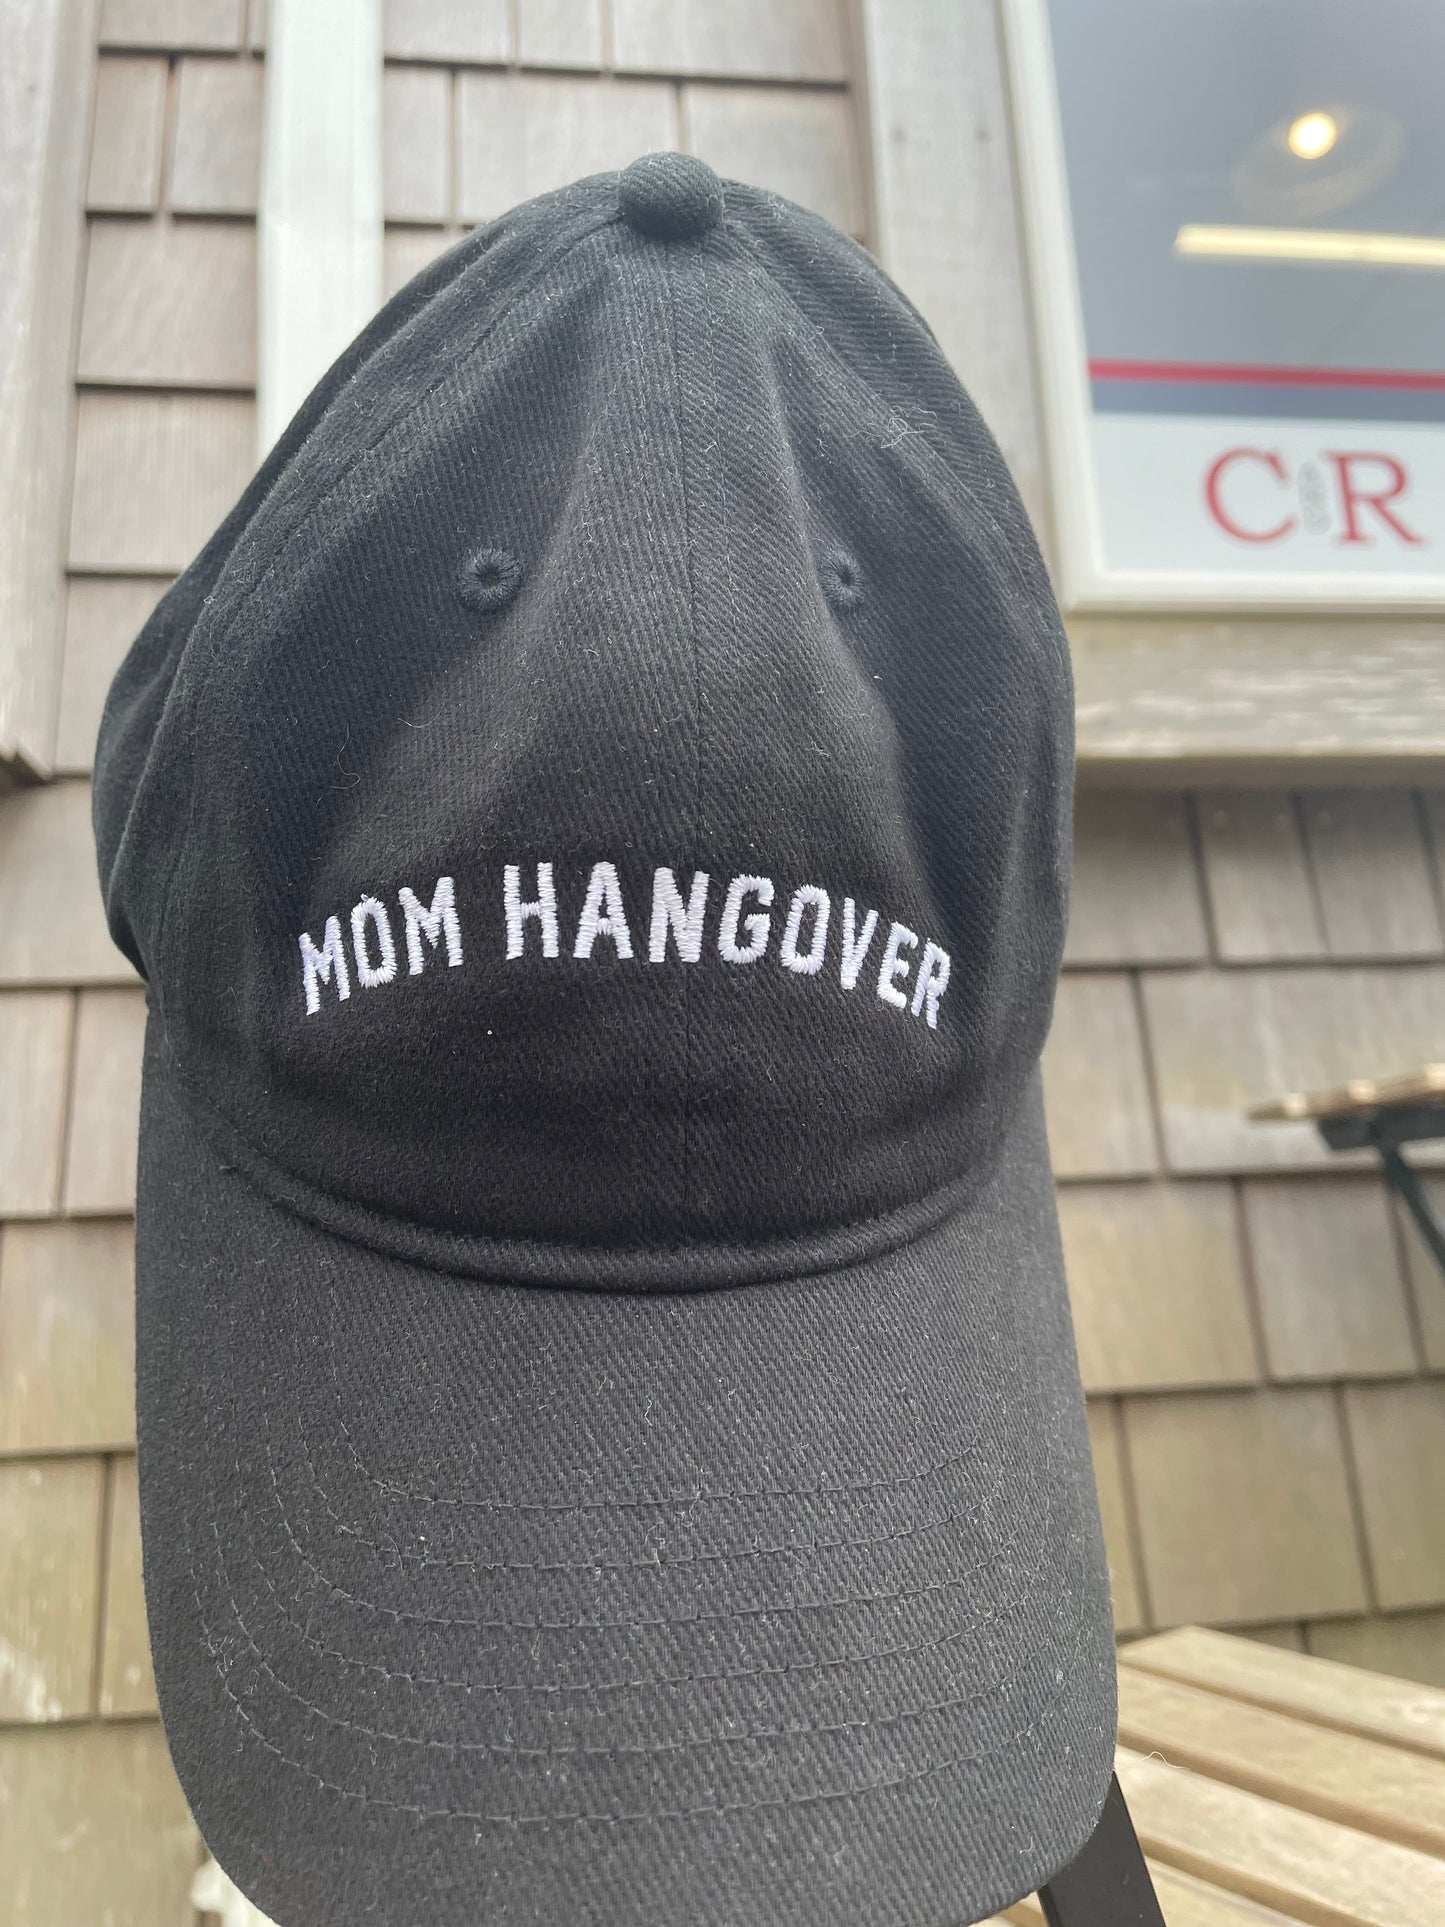 Mom Hangover Baseball Hat outside